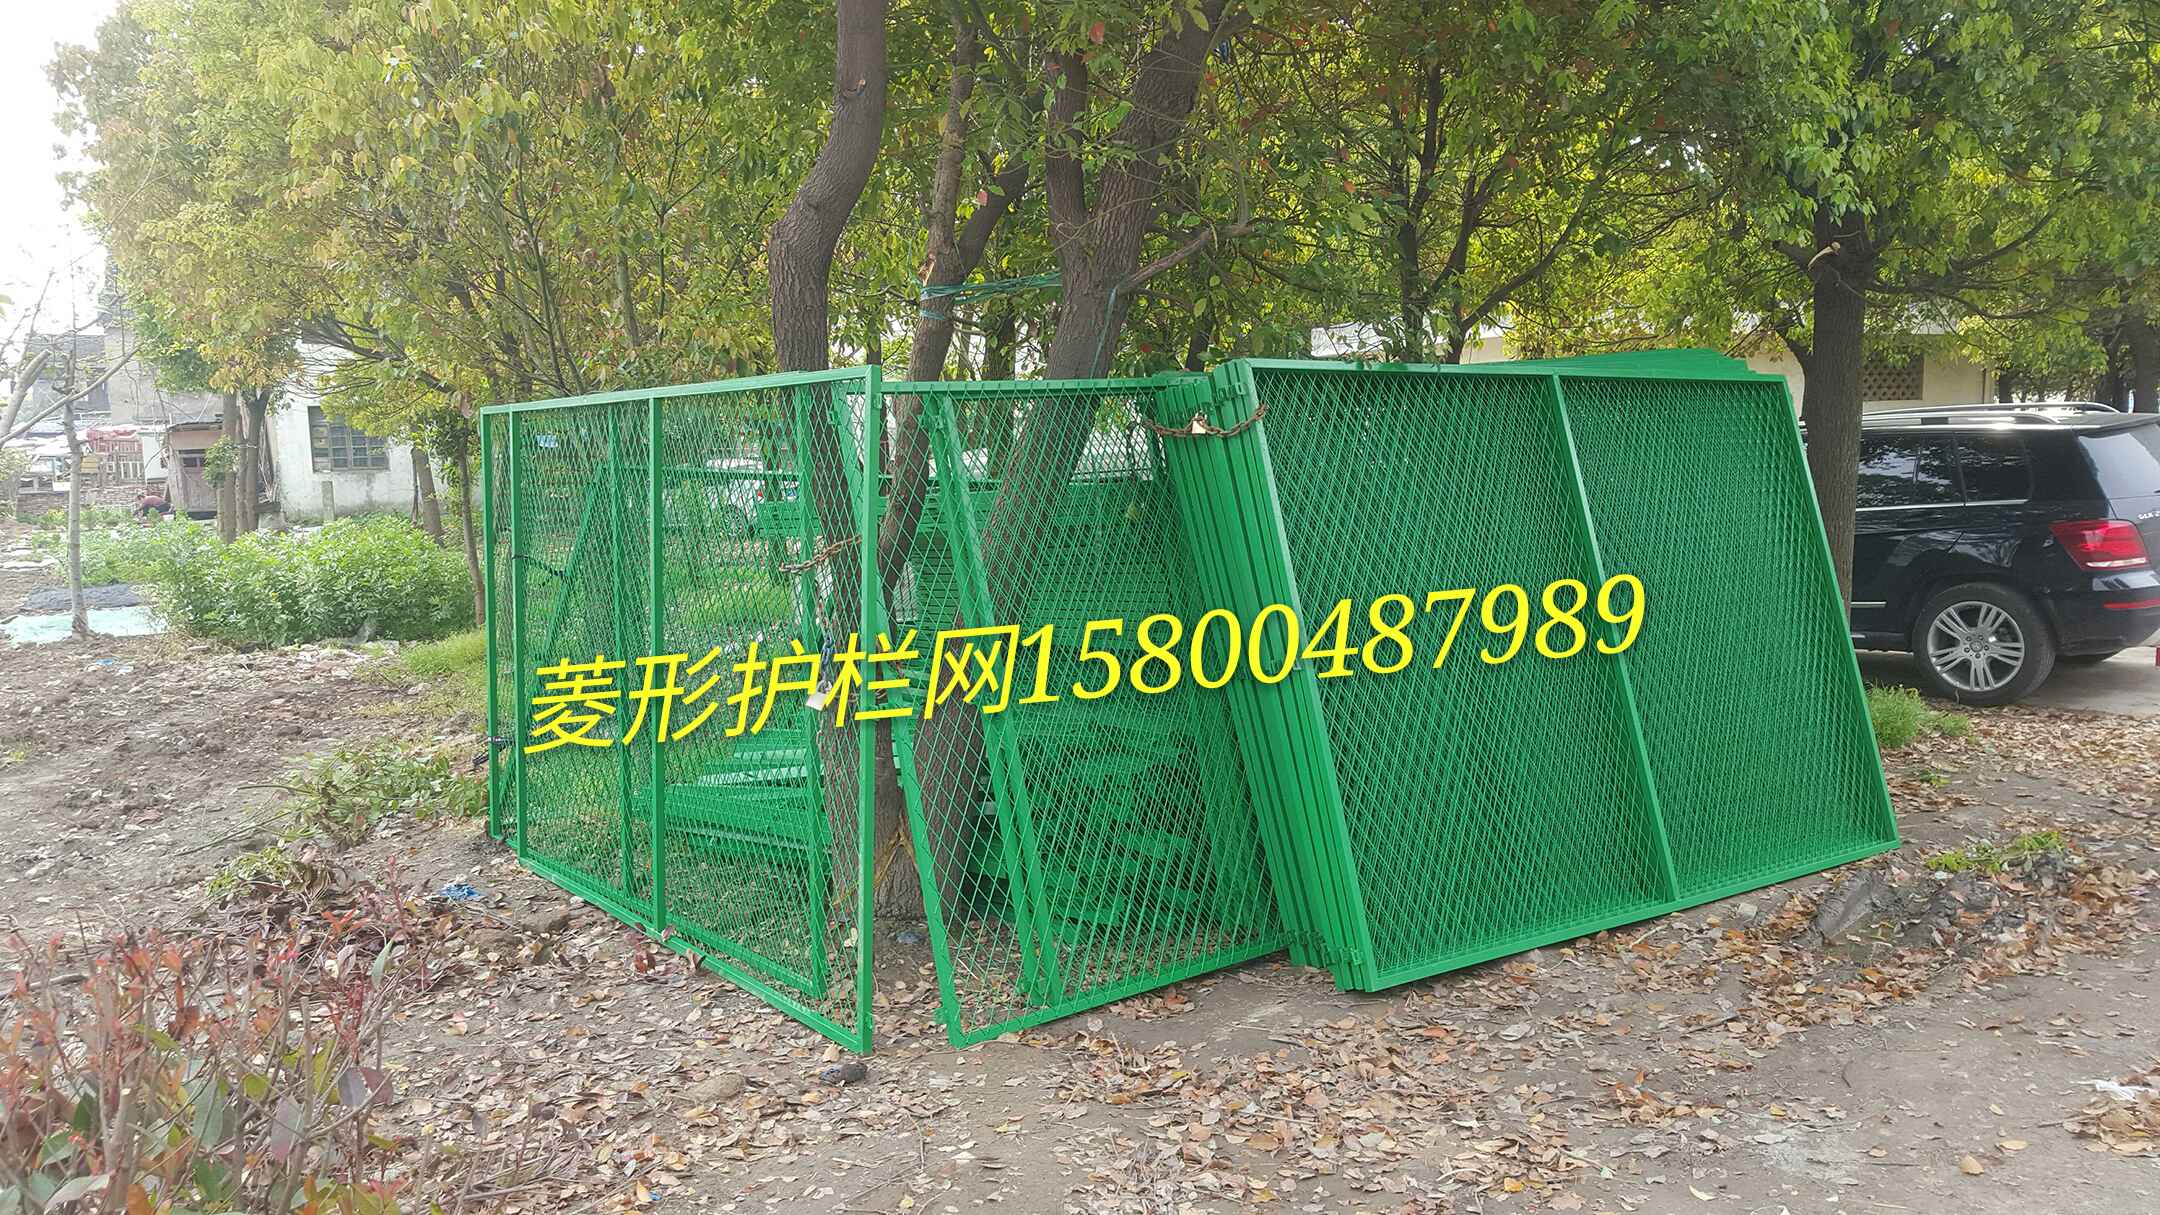 体育场护栏网上海护栏网、上海围栏网、上海隔离网 上海护栏网 体育场围网 体育场护栏网